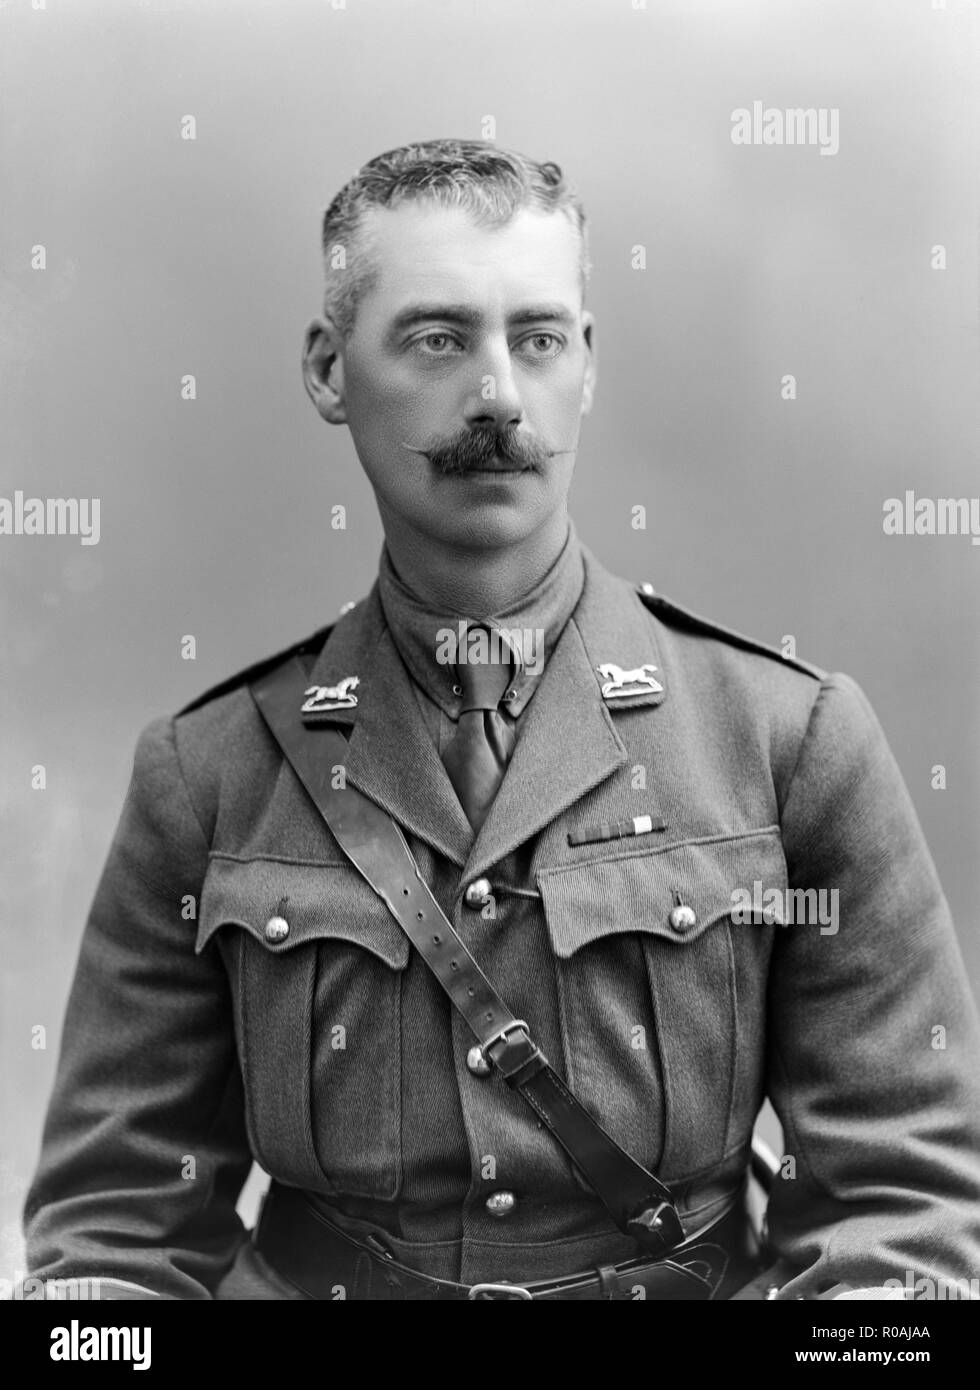 Ritratto fotografia scattata il 14 giugno 1915, mostrando il Tenente W. M. maggiordomo del terzo re della propria ussari. La fotografia è stata scattata in un London Studio e mostra il funzionario in pieno uniforme. Foto Stock